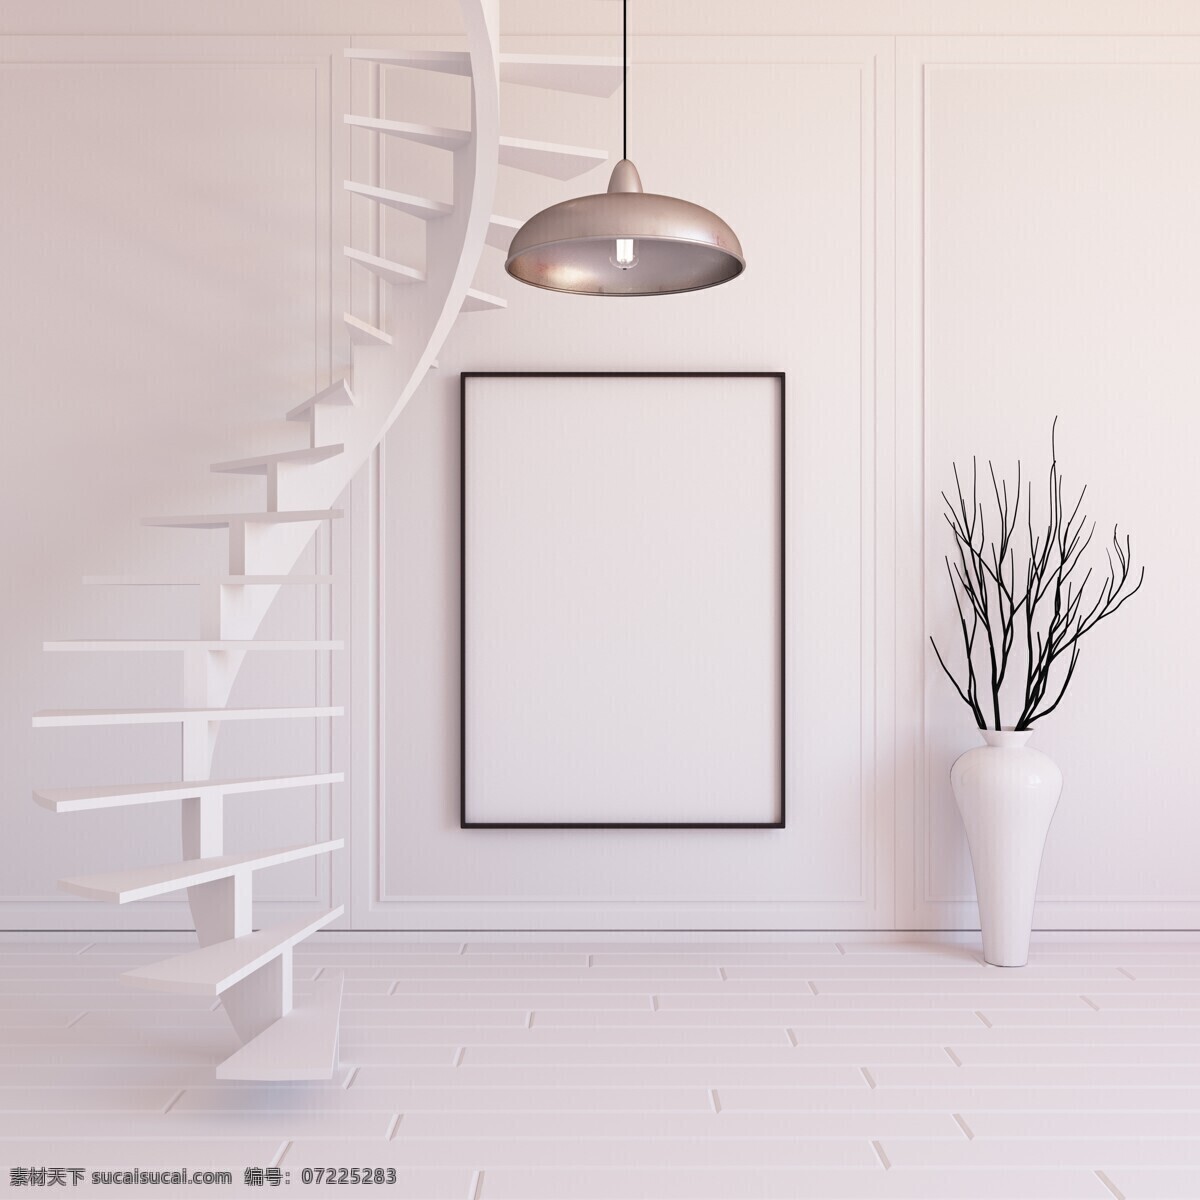 唯美 3d 立体 家居装饰 相框 空白 空白相框 绿色植物 现代 简约 爬梯 摄影模板 相框模板